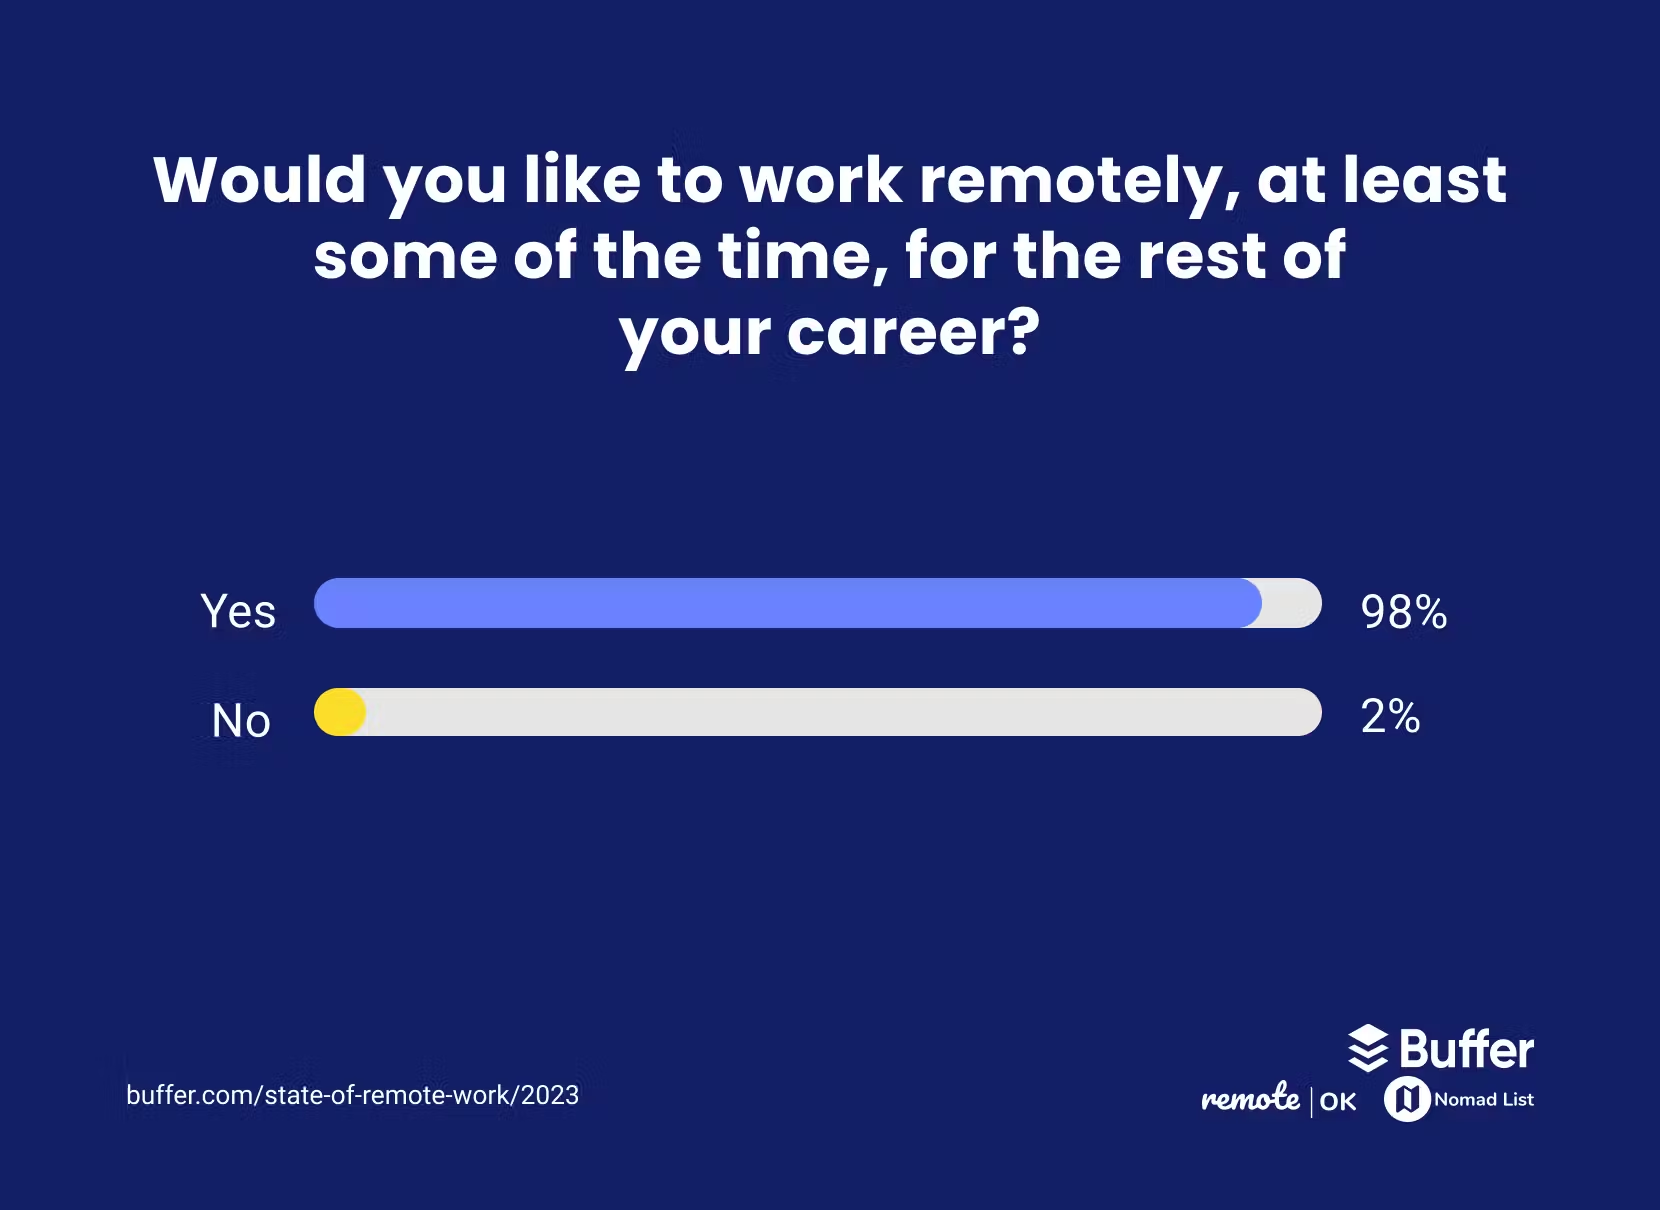 労働者の 98% が少なくとも一部の時間はリモートで働きたいという願望を表明していることを示す図